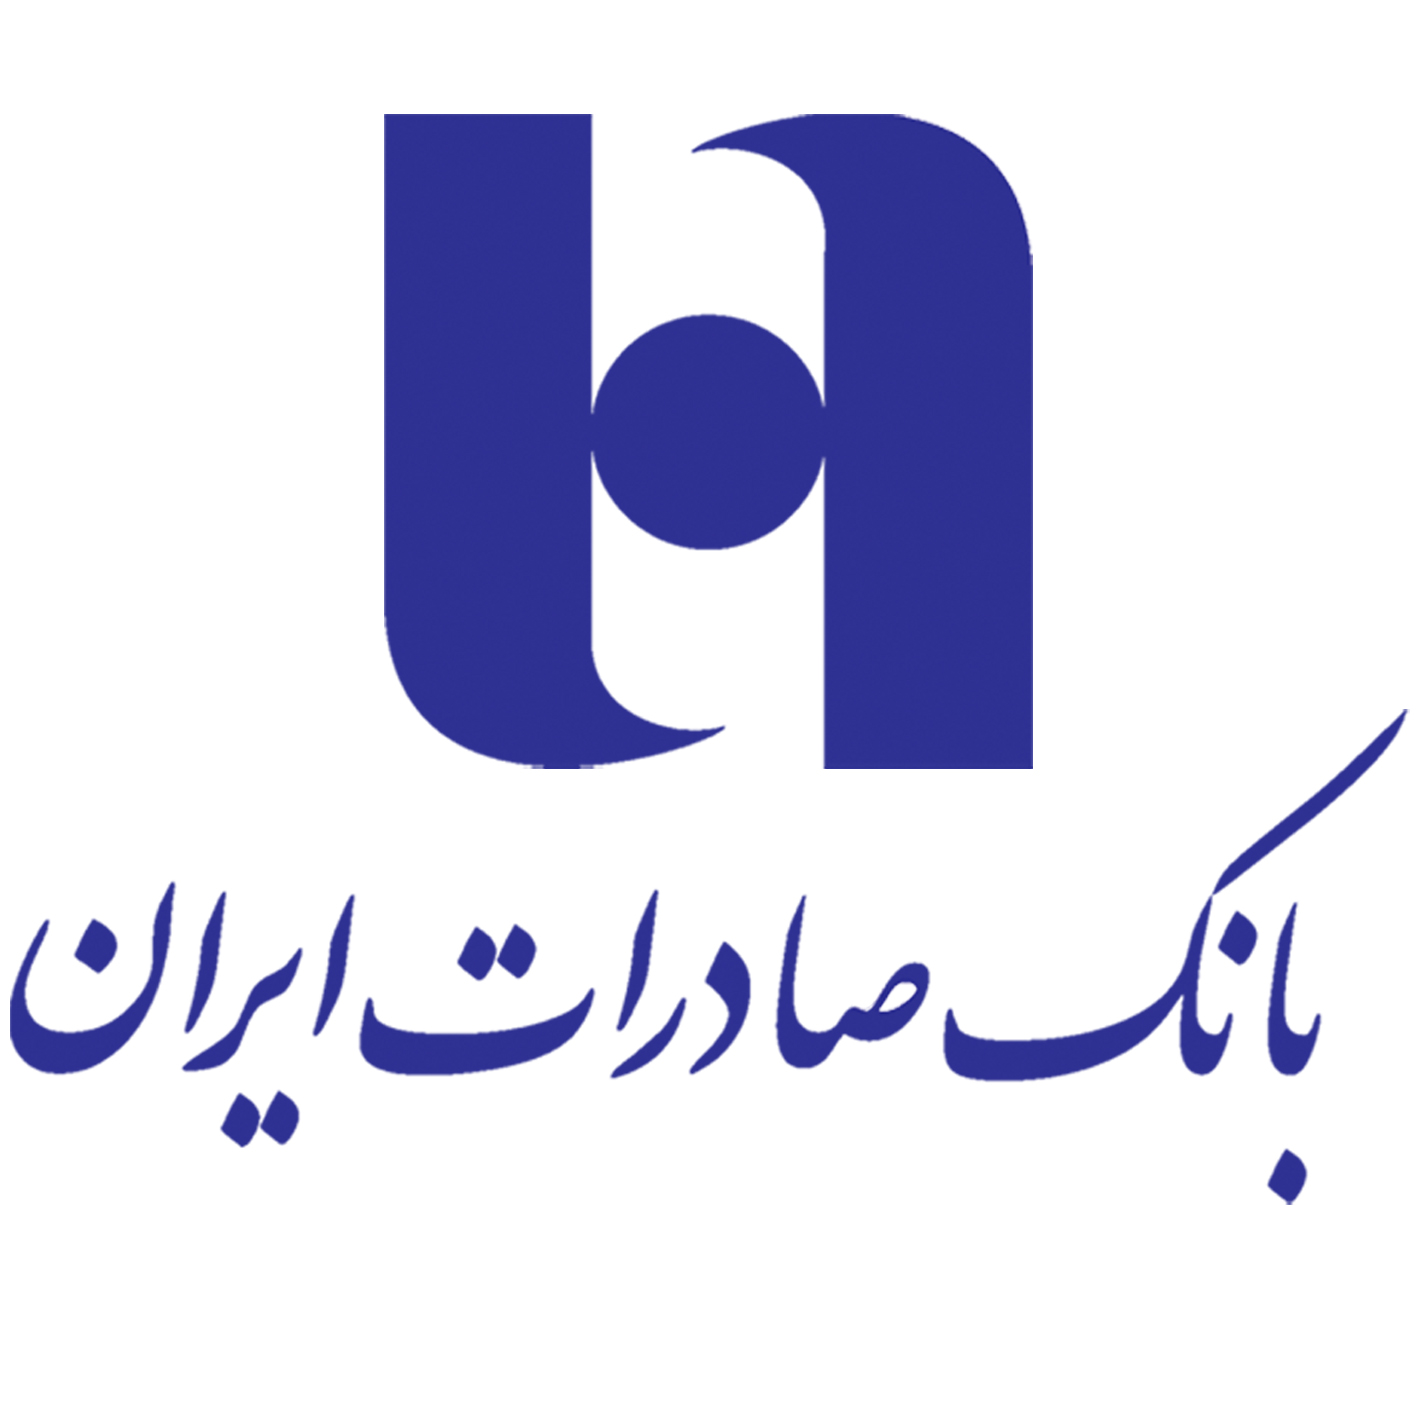 رتبه اول بانک صادرات ایران در بازار تسهیلات چهار محال و بختیاری